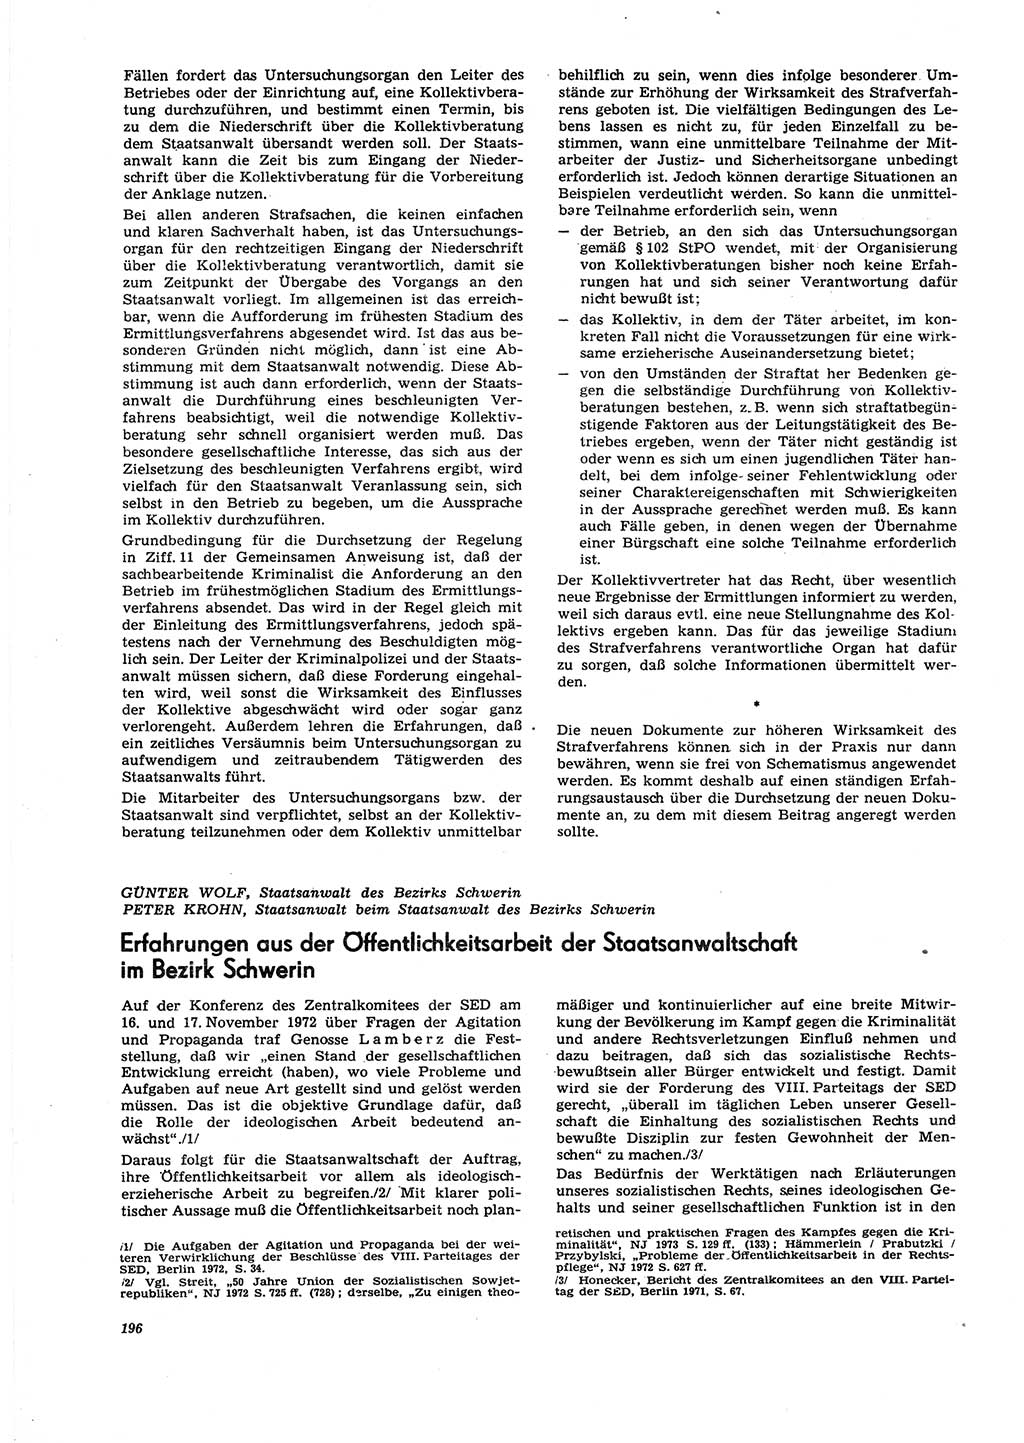 Neue Justiz (NJ), Zeitschrift für Recht und Rechtswissenschaft [Deutsche Demokratische Republik (DDR)], 27. Jahrgang 1973, Seite 196 (NJ DDR 1973, S. 196)